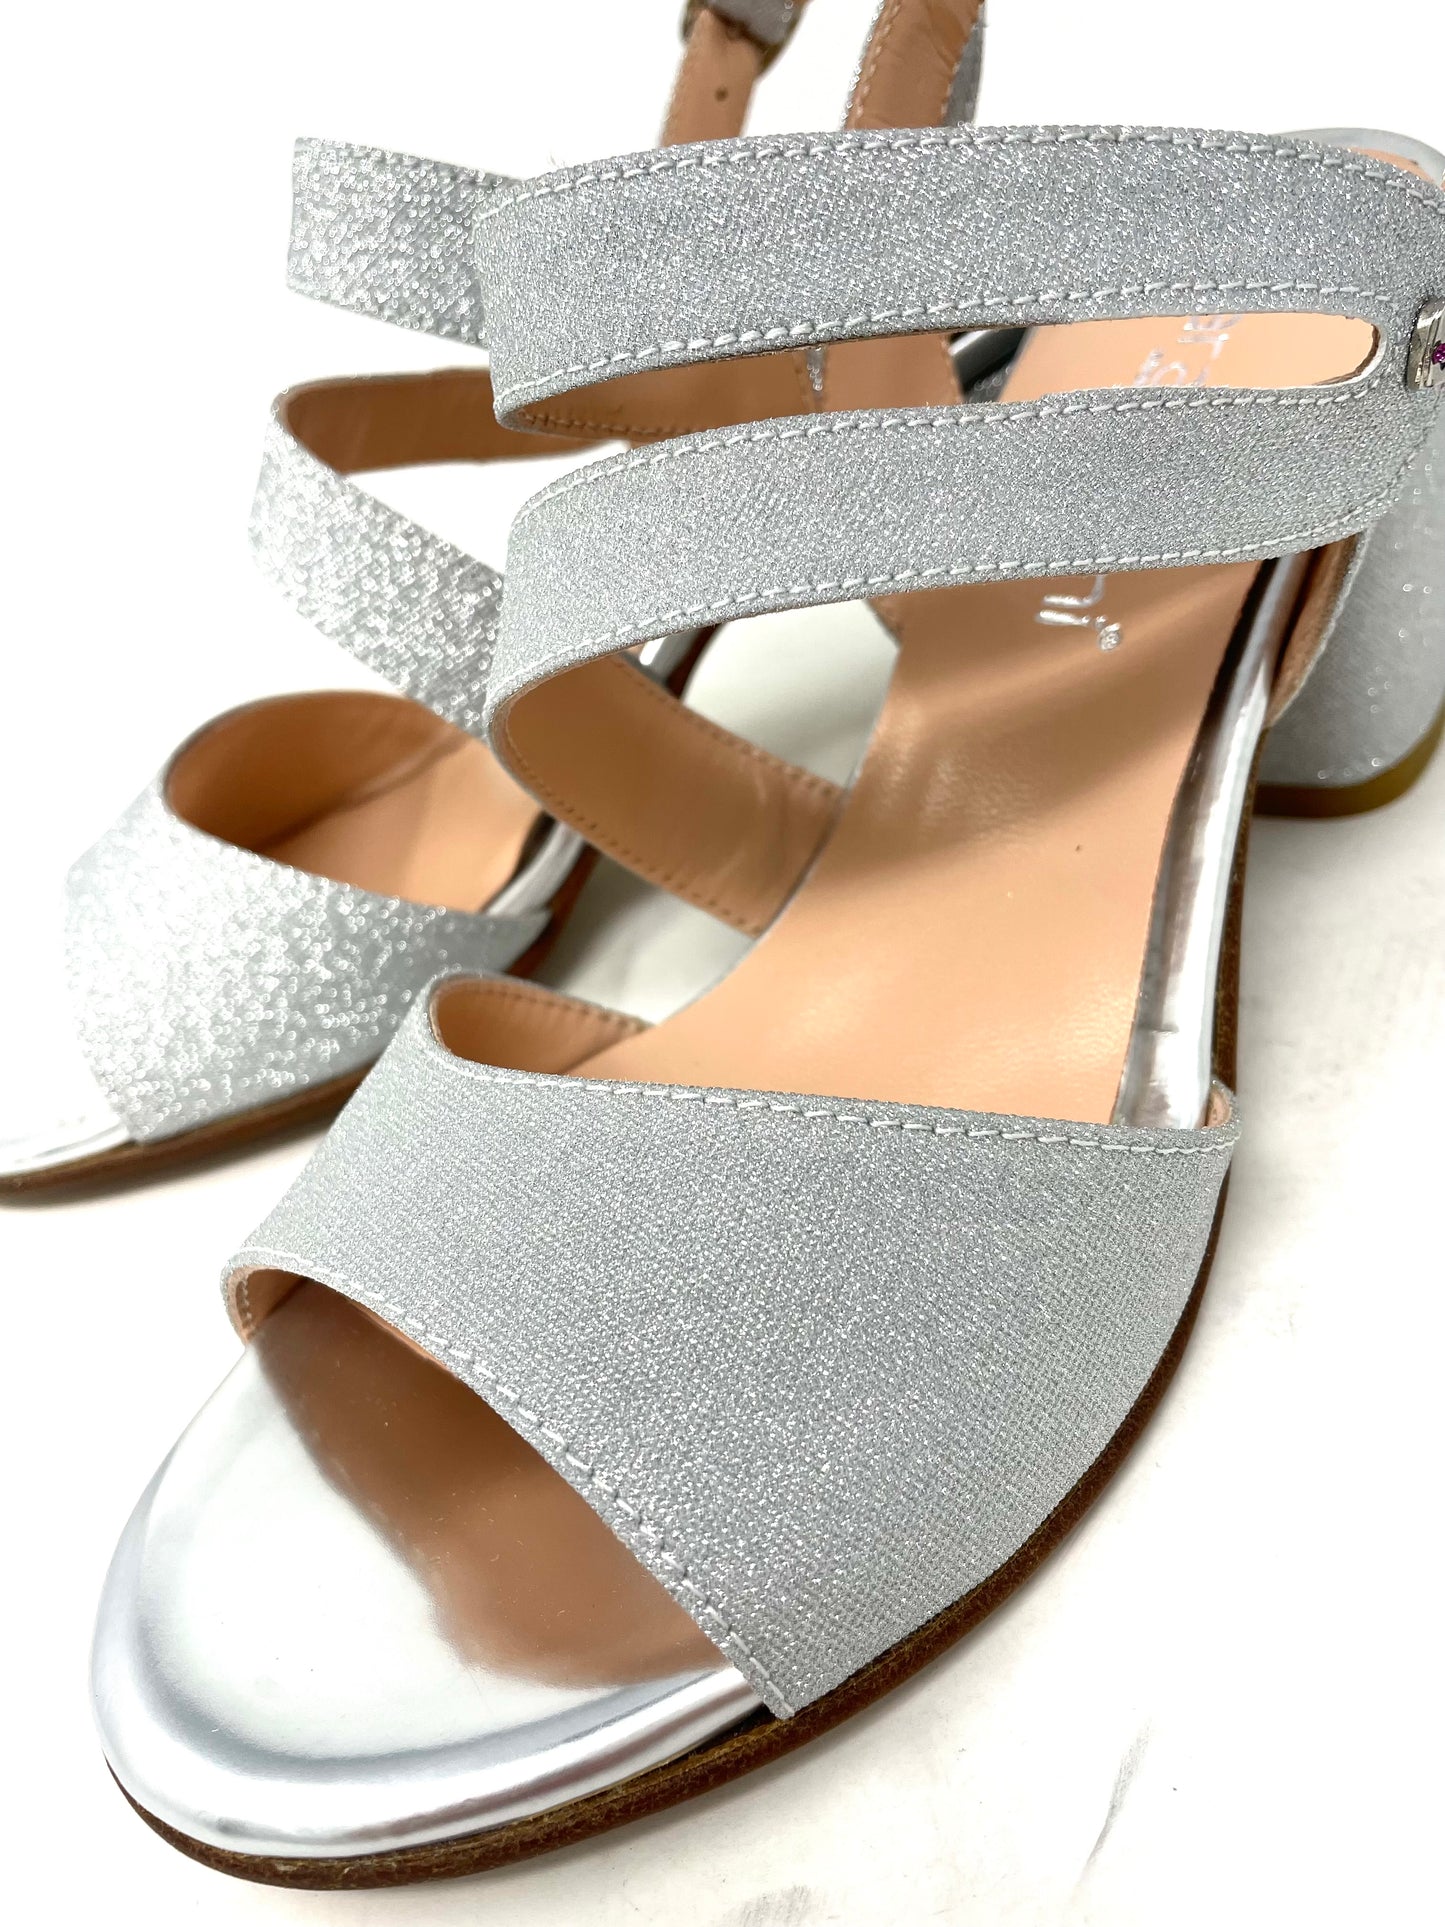 Sandalo con tacco argento glitter -24121